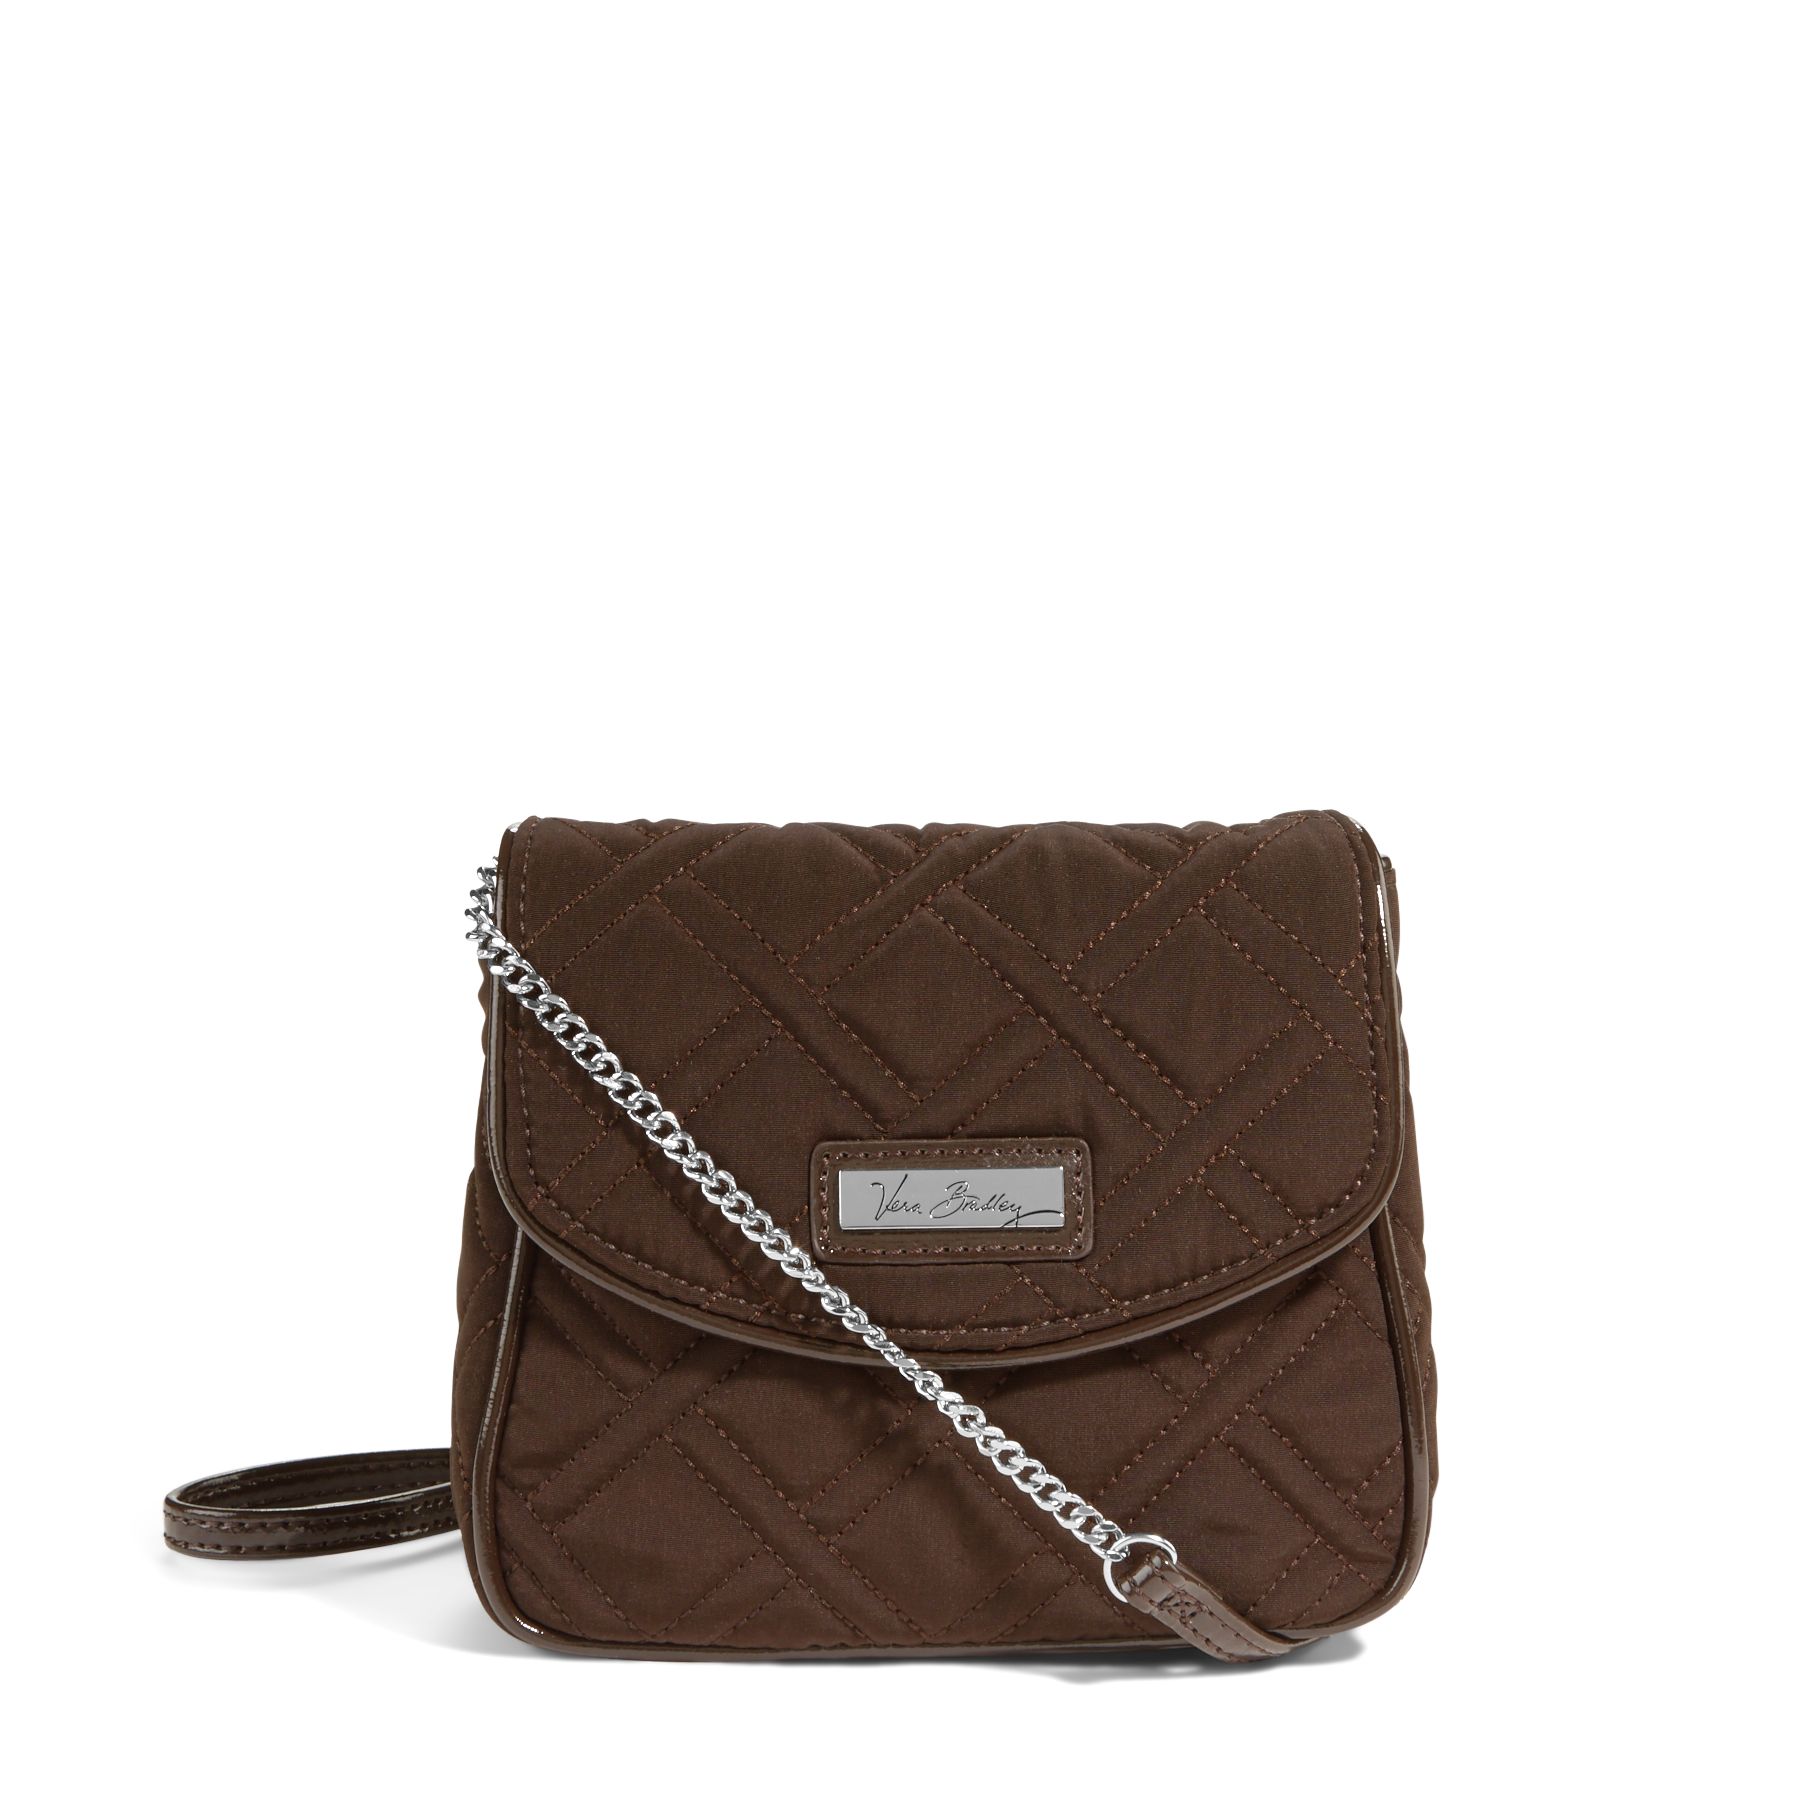 Vera Bradley Chain Strap Crossbody Bag | eBay